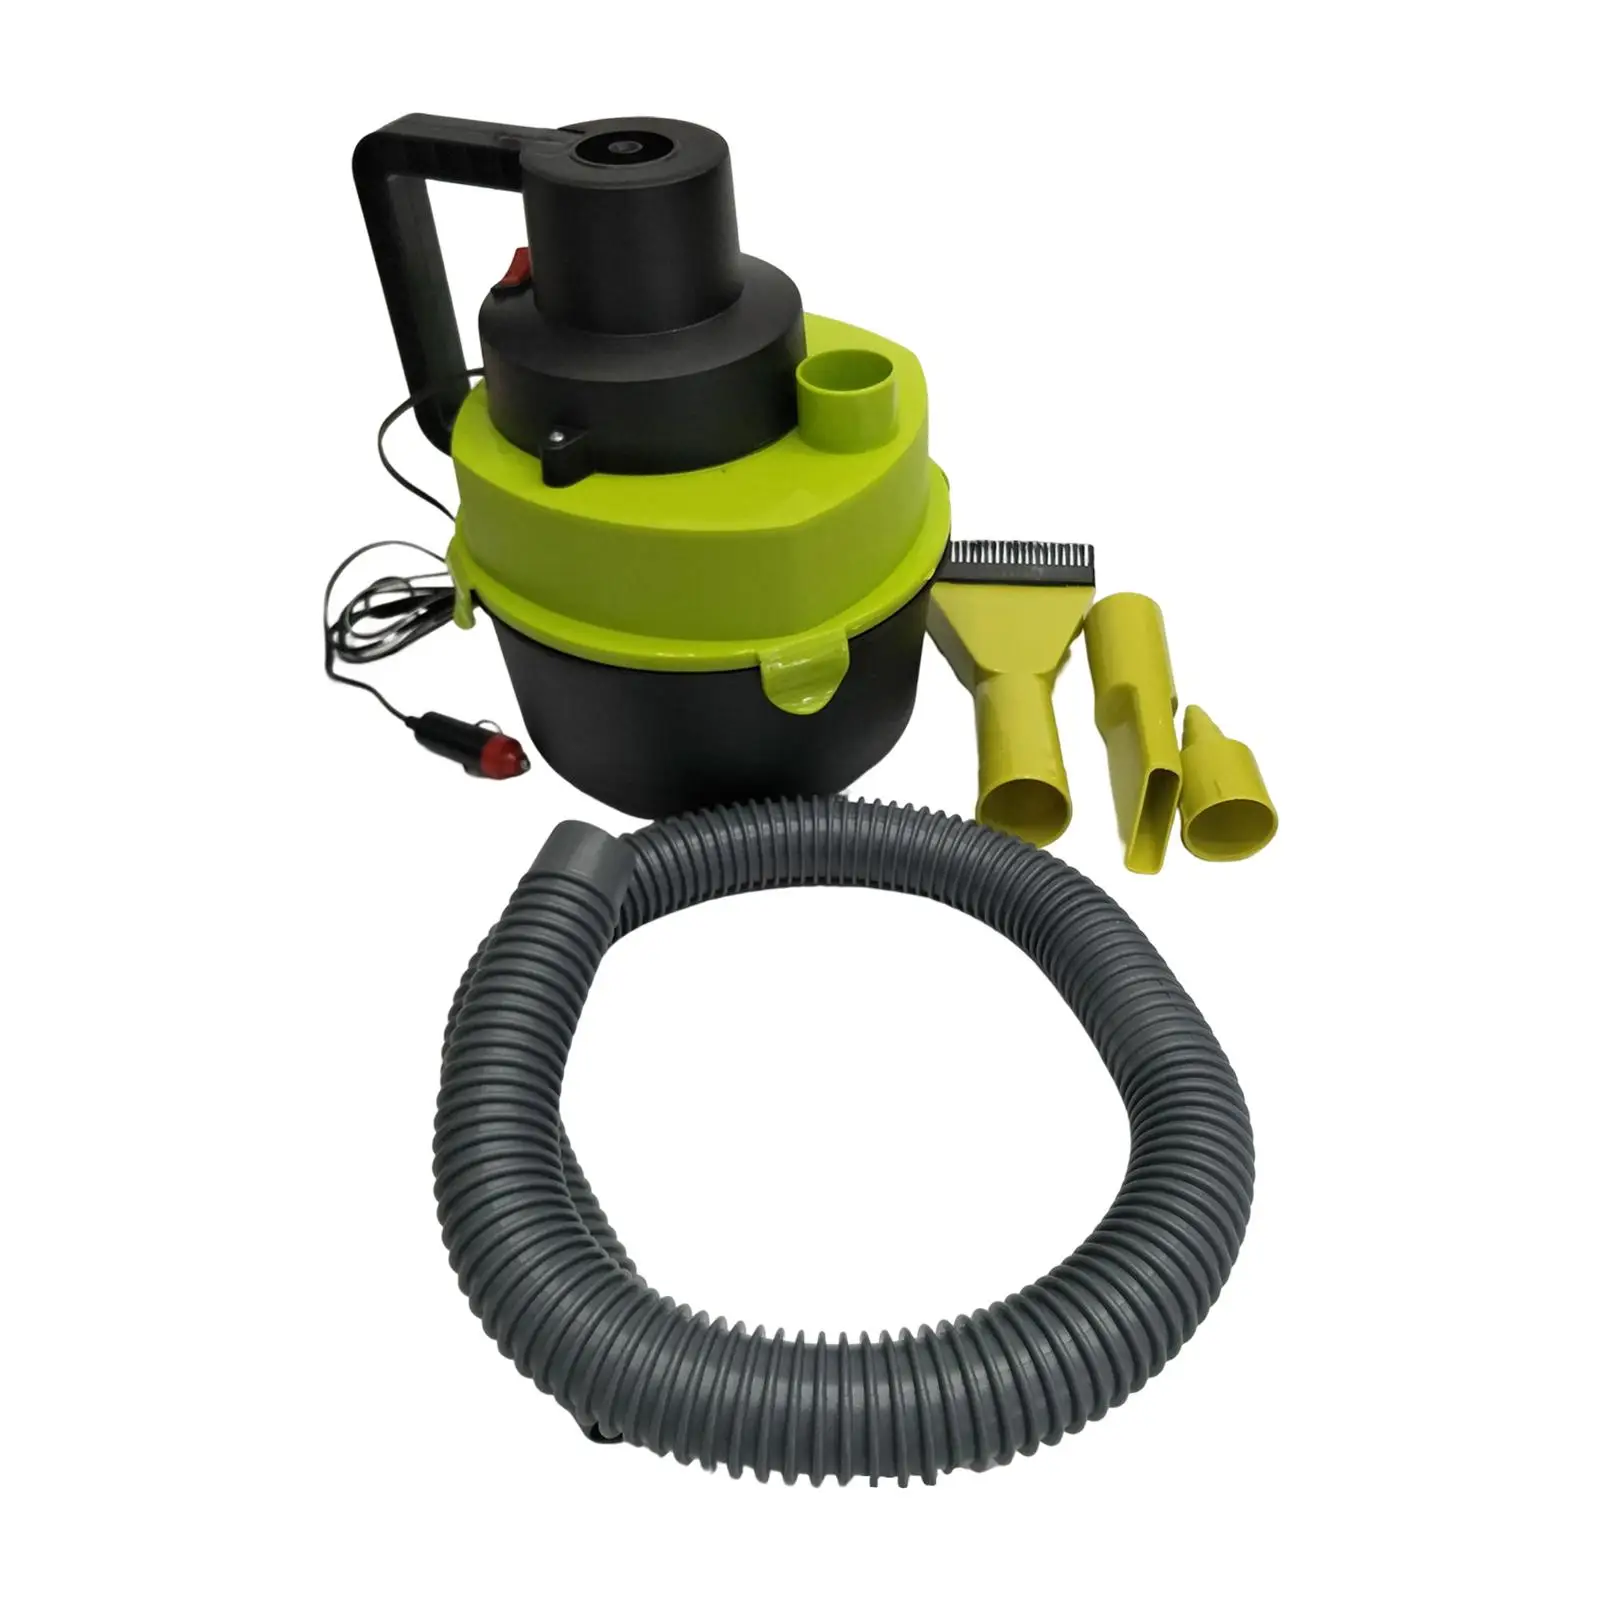 Portable Shop Vacuum with Attachments Debris Dual Use 4L Liquid dry wet Vacuum for Window Seams Basement Workshop Corners Carpet